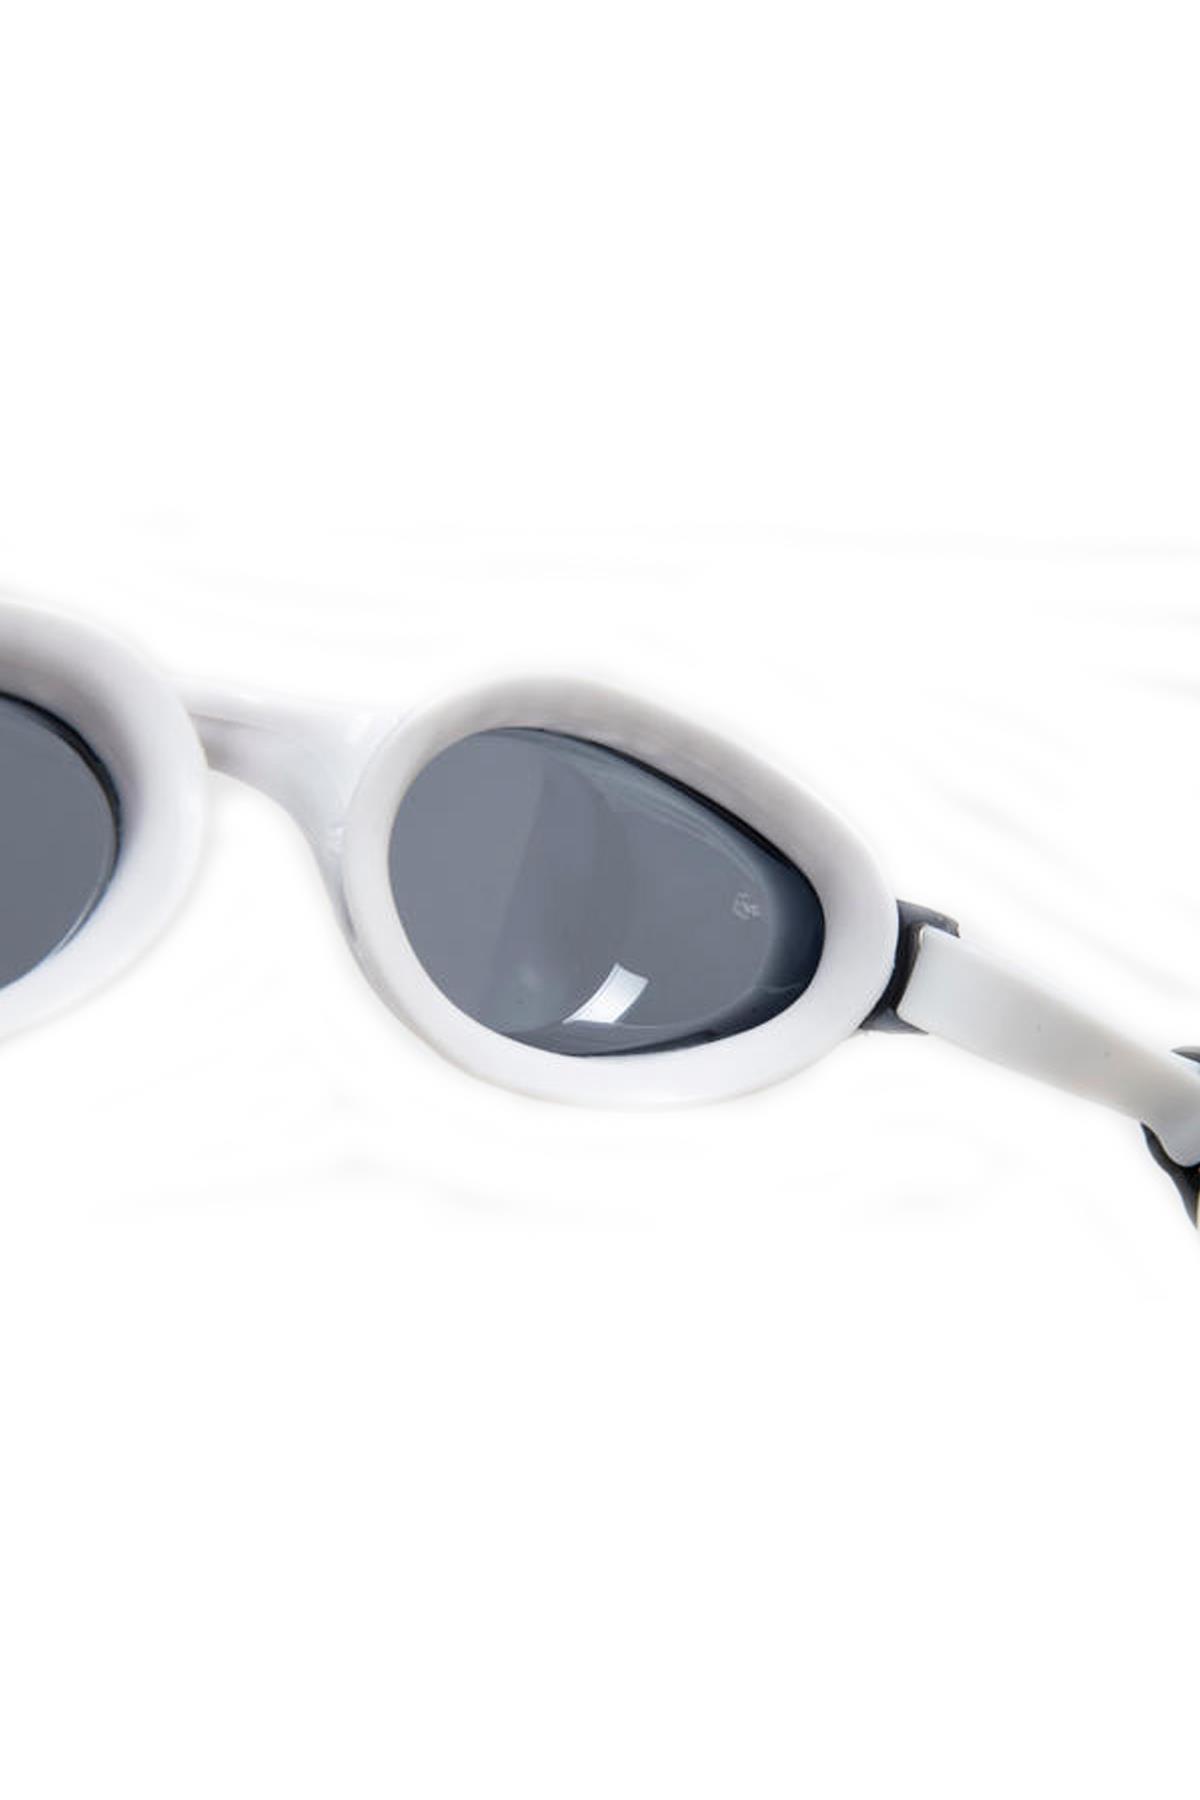 ARENA Arena Air-Soft Yüzücü Gözlüğü Beyaz (003149-510)